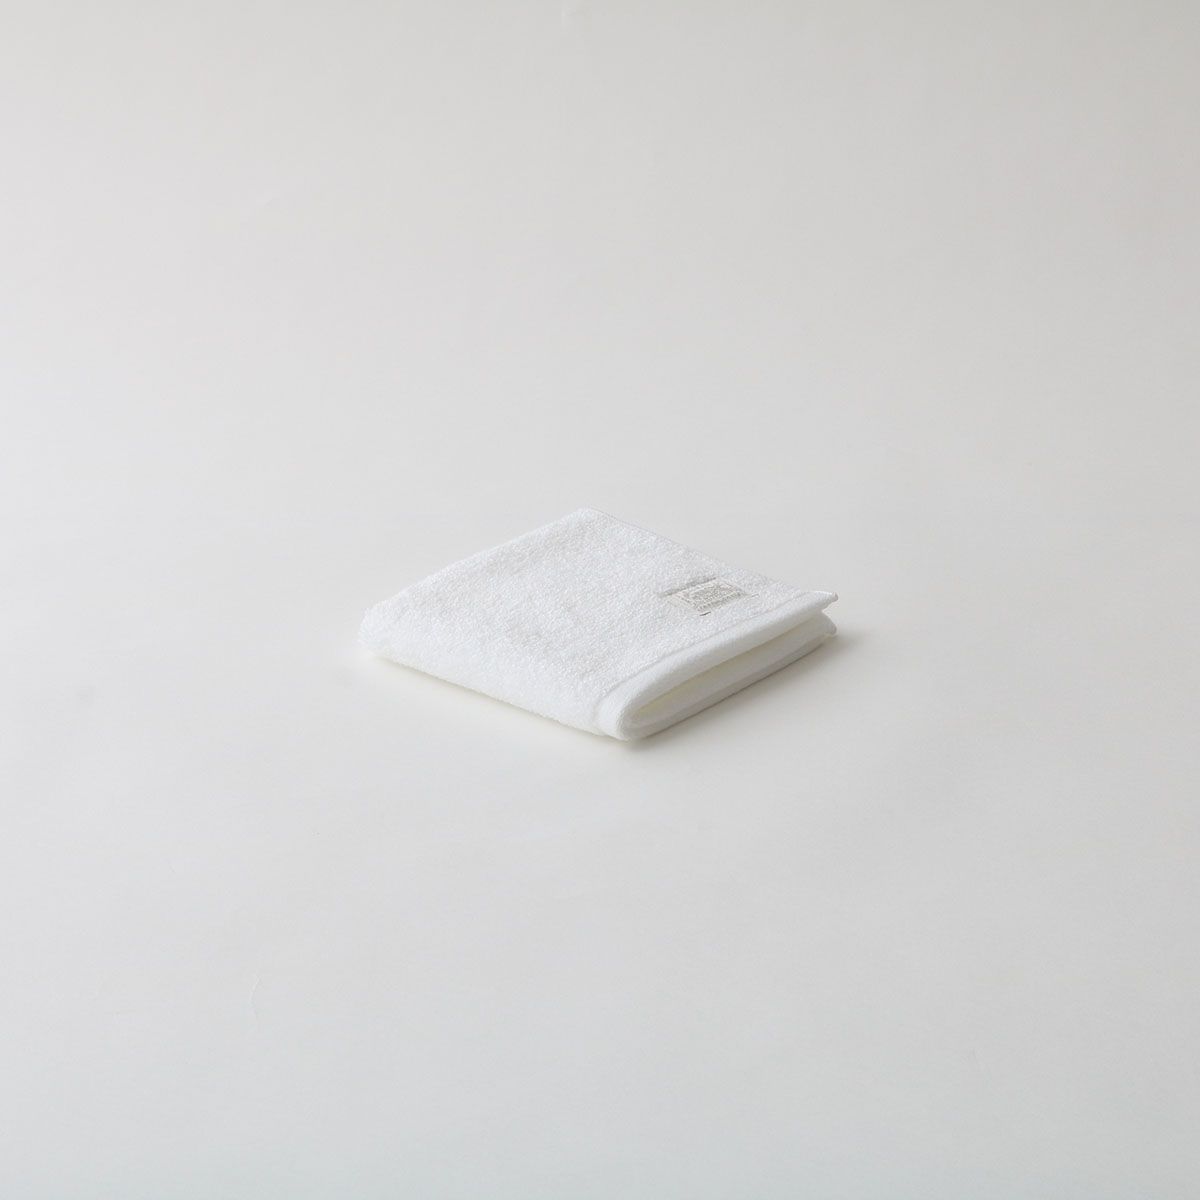 超甘撚りエクストラリッチハンド・ハンカチ&HAND SOAP セット (麹塵・ホワイト) フリー FREE